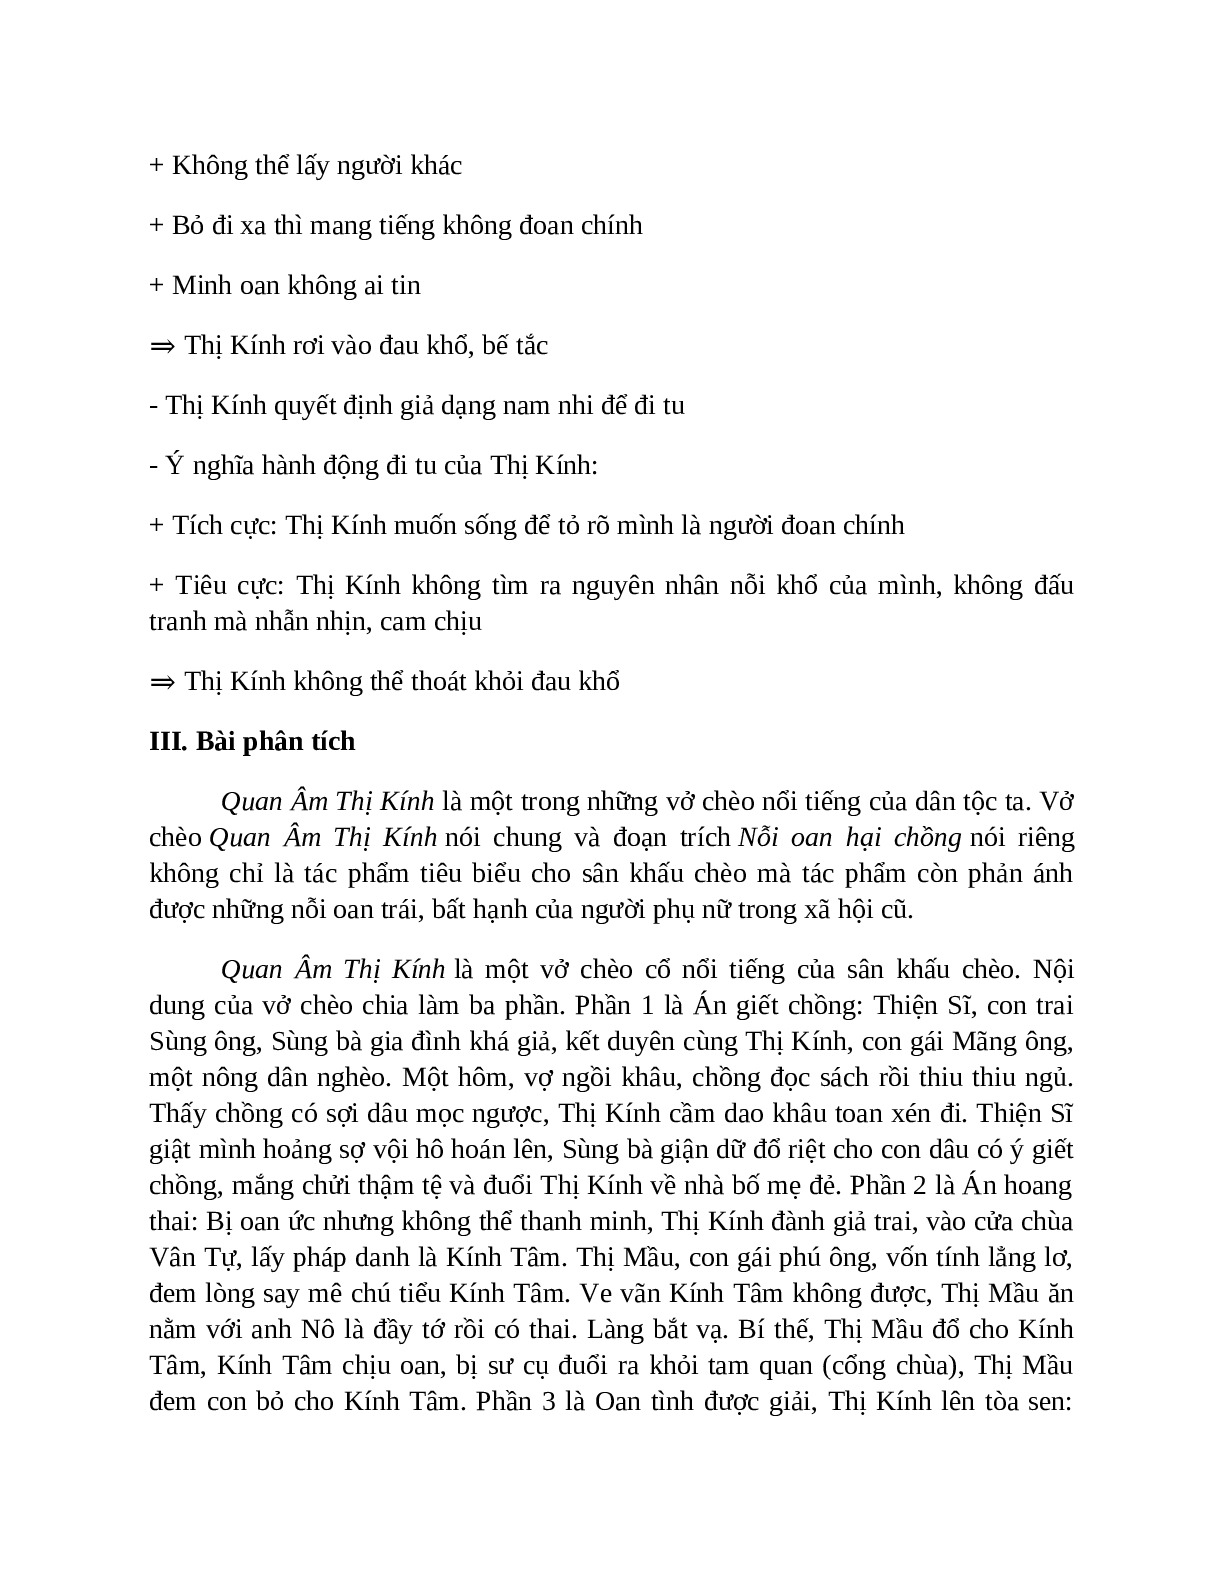 Sơ đồ tư duy bài Quan Âm Thị Kính dễ nhớ, ngắn nhất - Ngữ văn lớp 7 (trang 5)